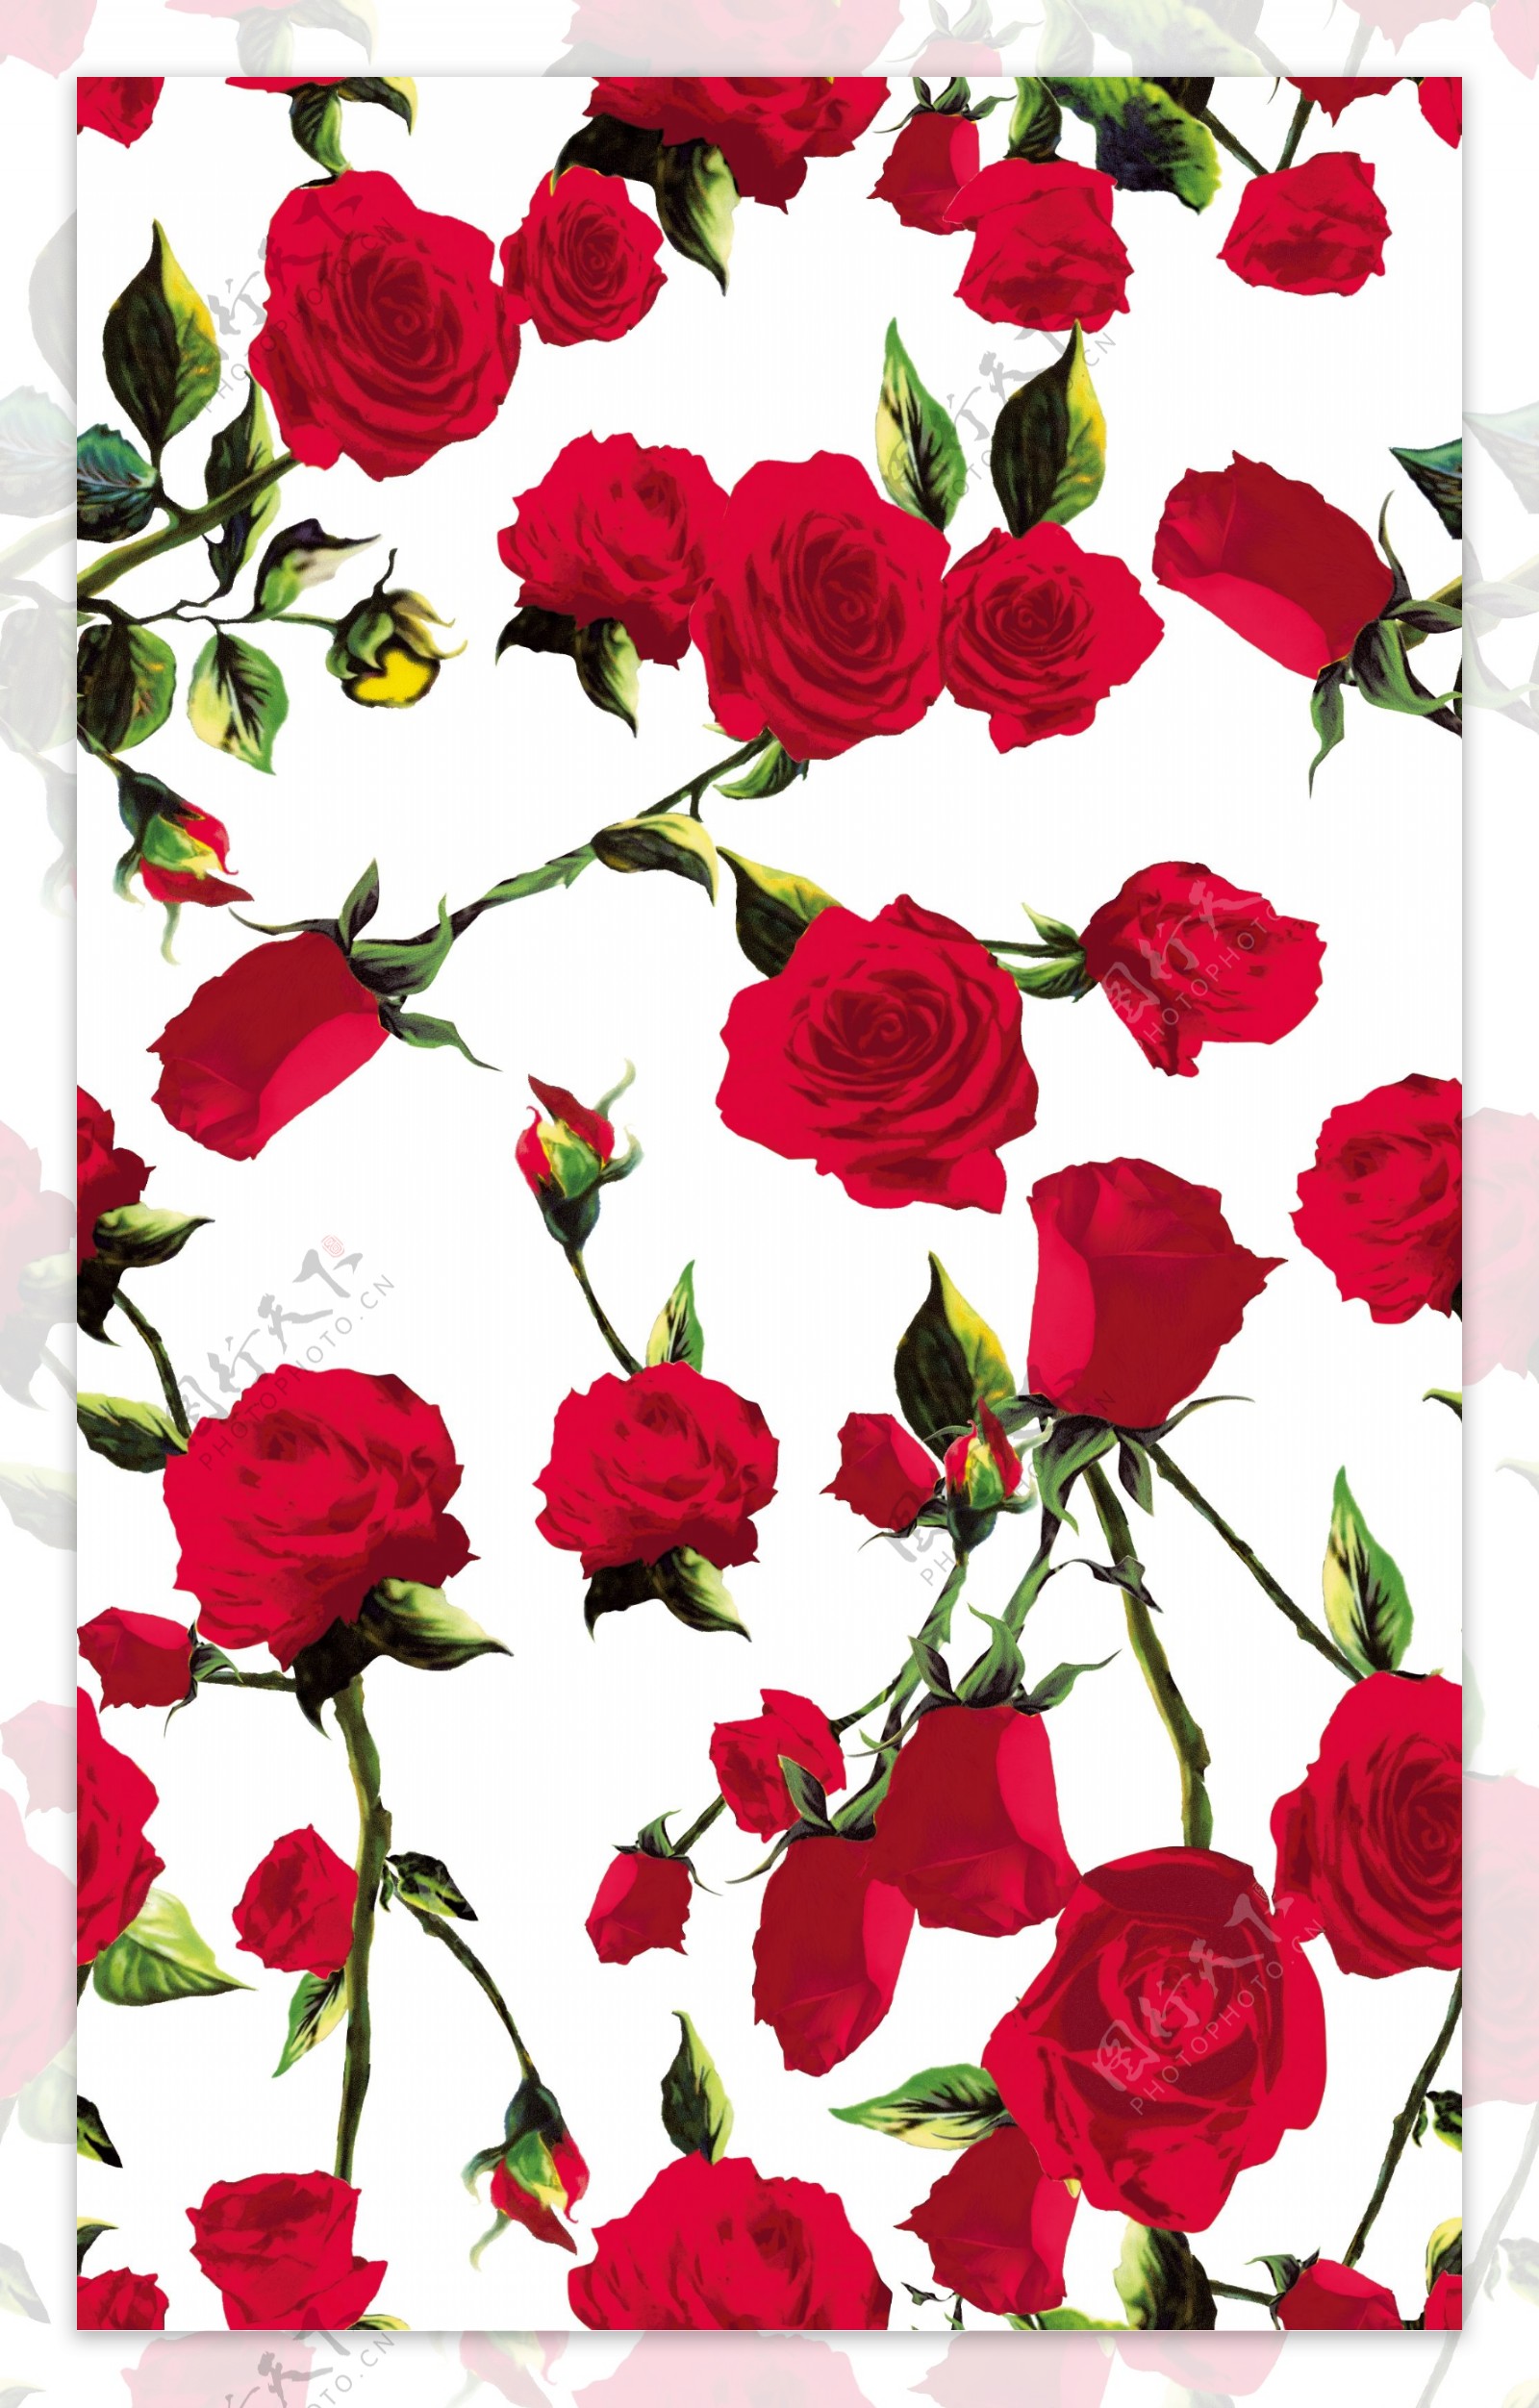 数码印花红玫瑰回位纹理图案